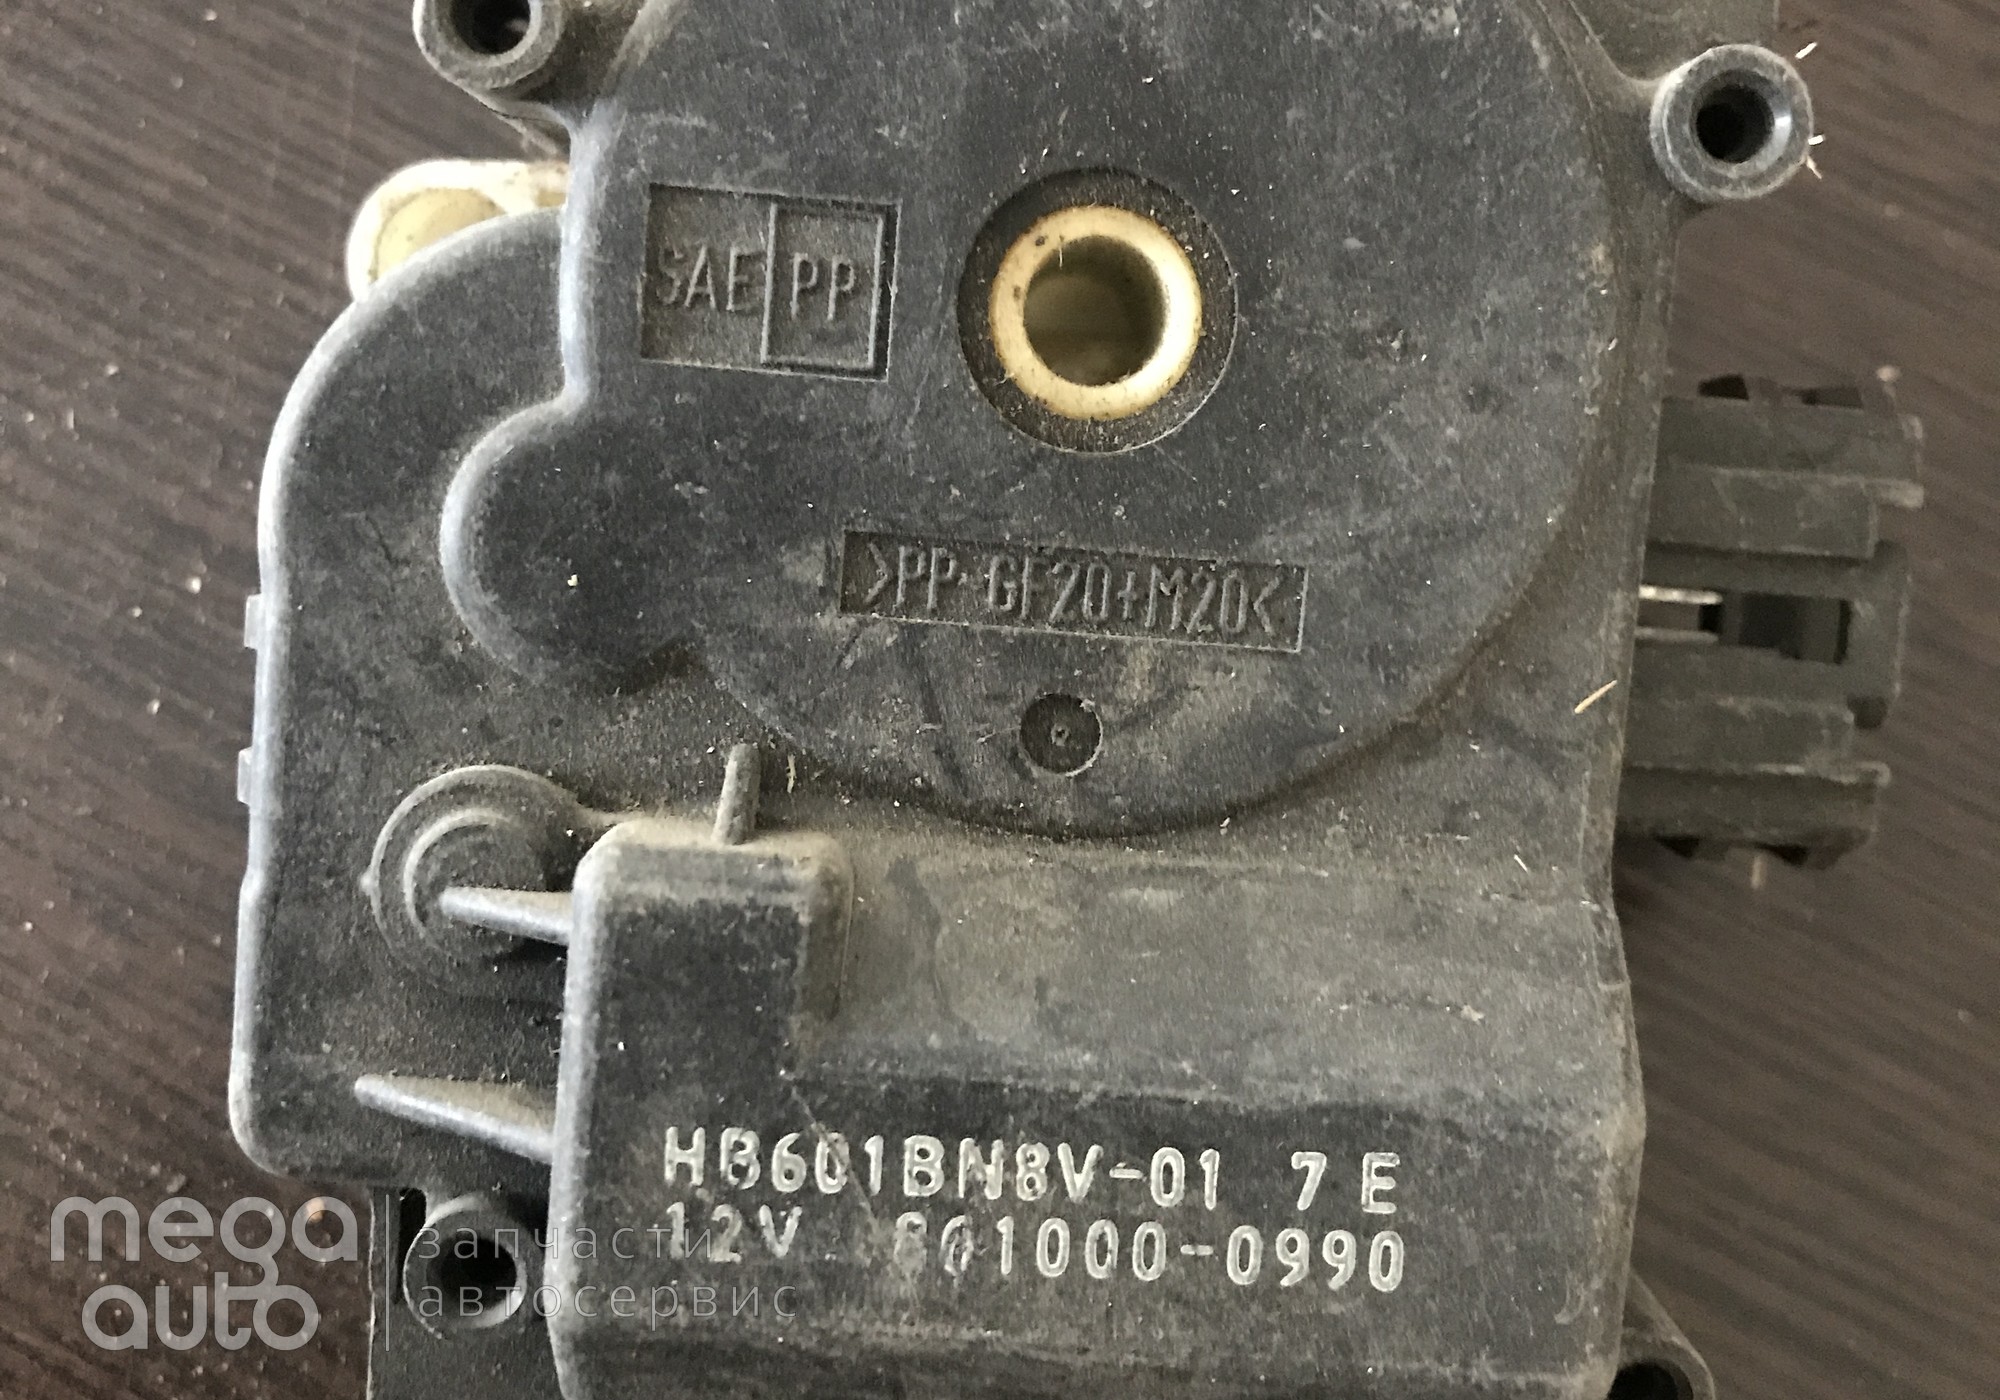 8610000990 Моторчик отопителя мазда 3, мазда 5 для Mazda 3